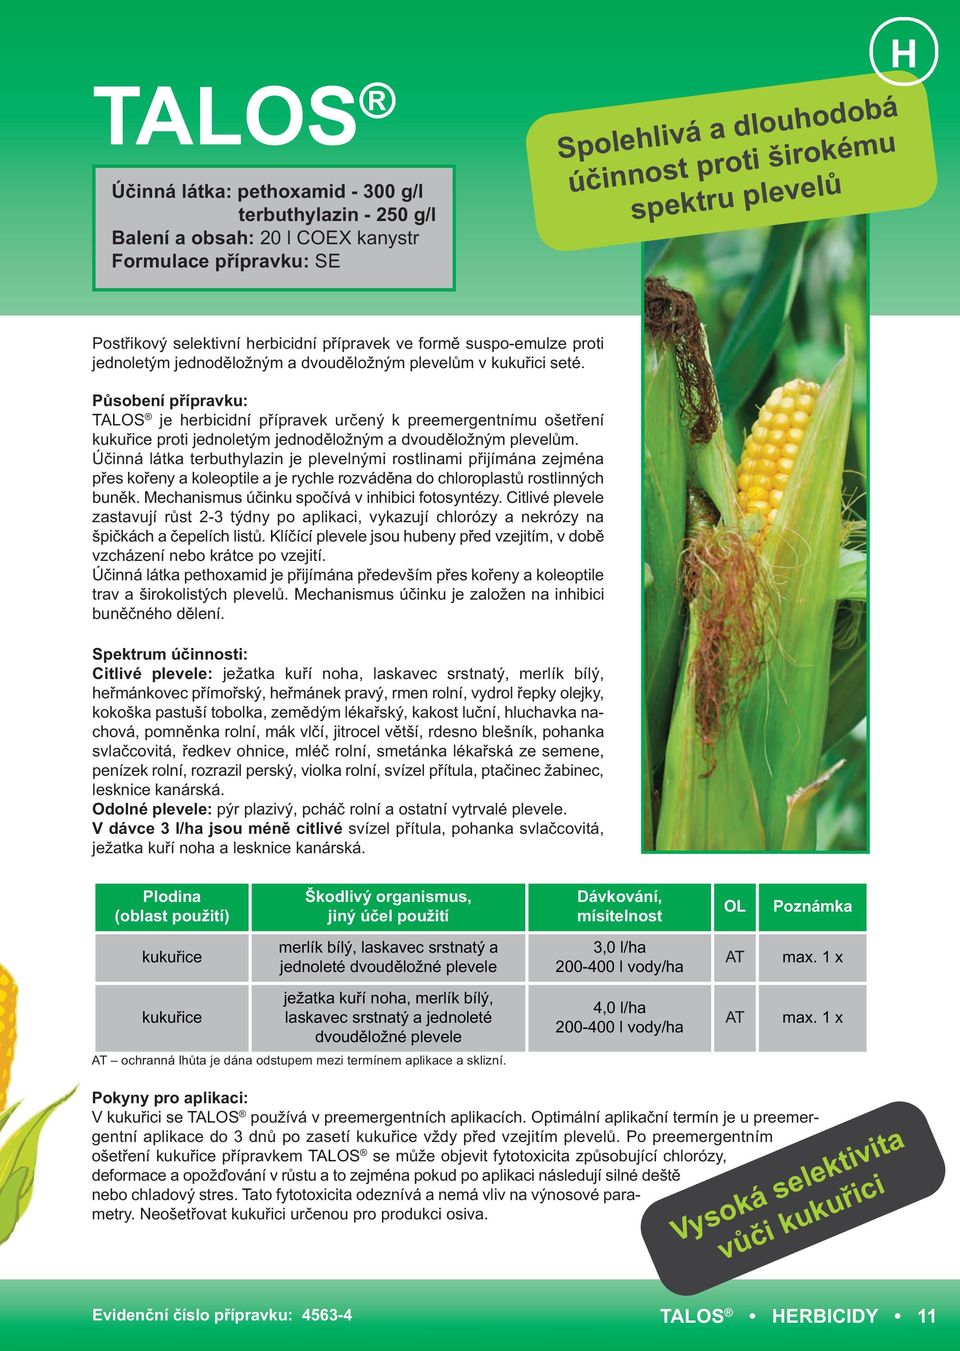 Působení přípravku: TALOS je herbicidní přípravek určený k preemergentnímu ošetření kukuřice proti jednoletým jednoděložným a dvouděložným plevelům.